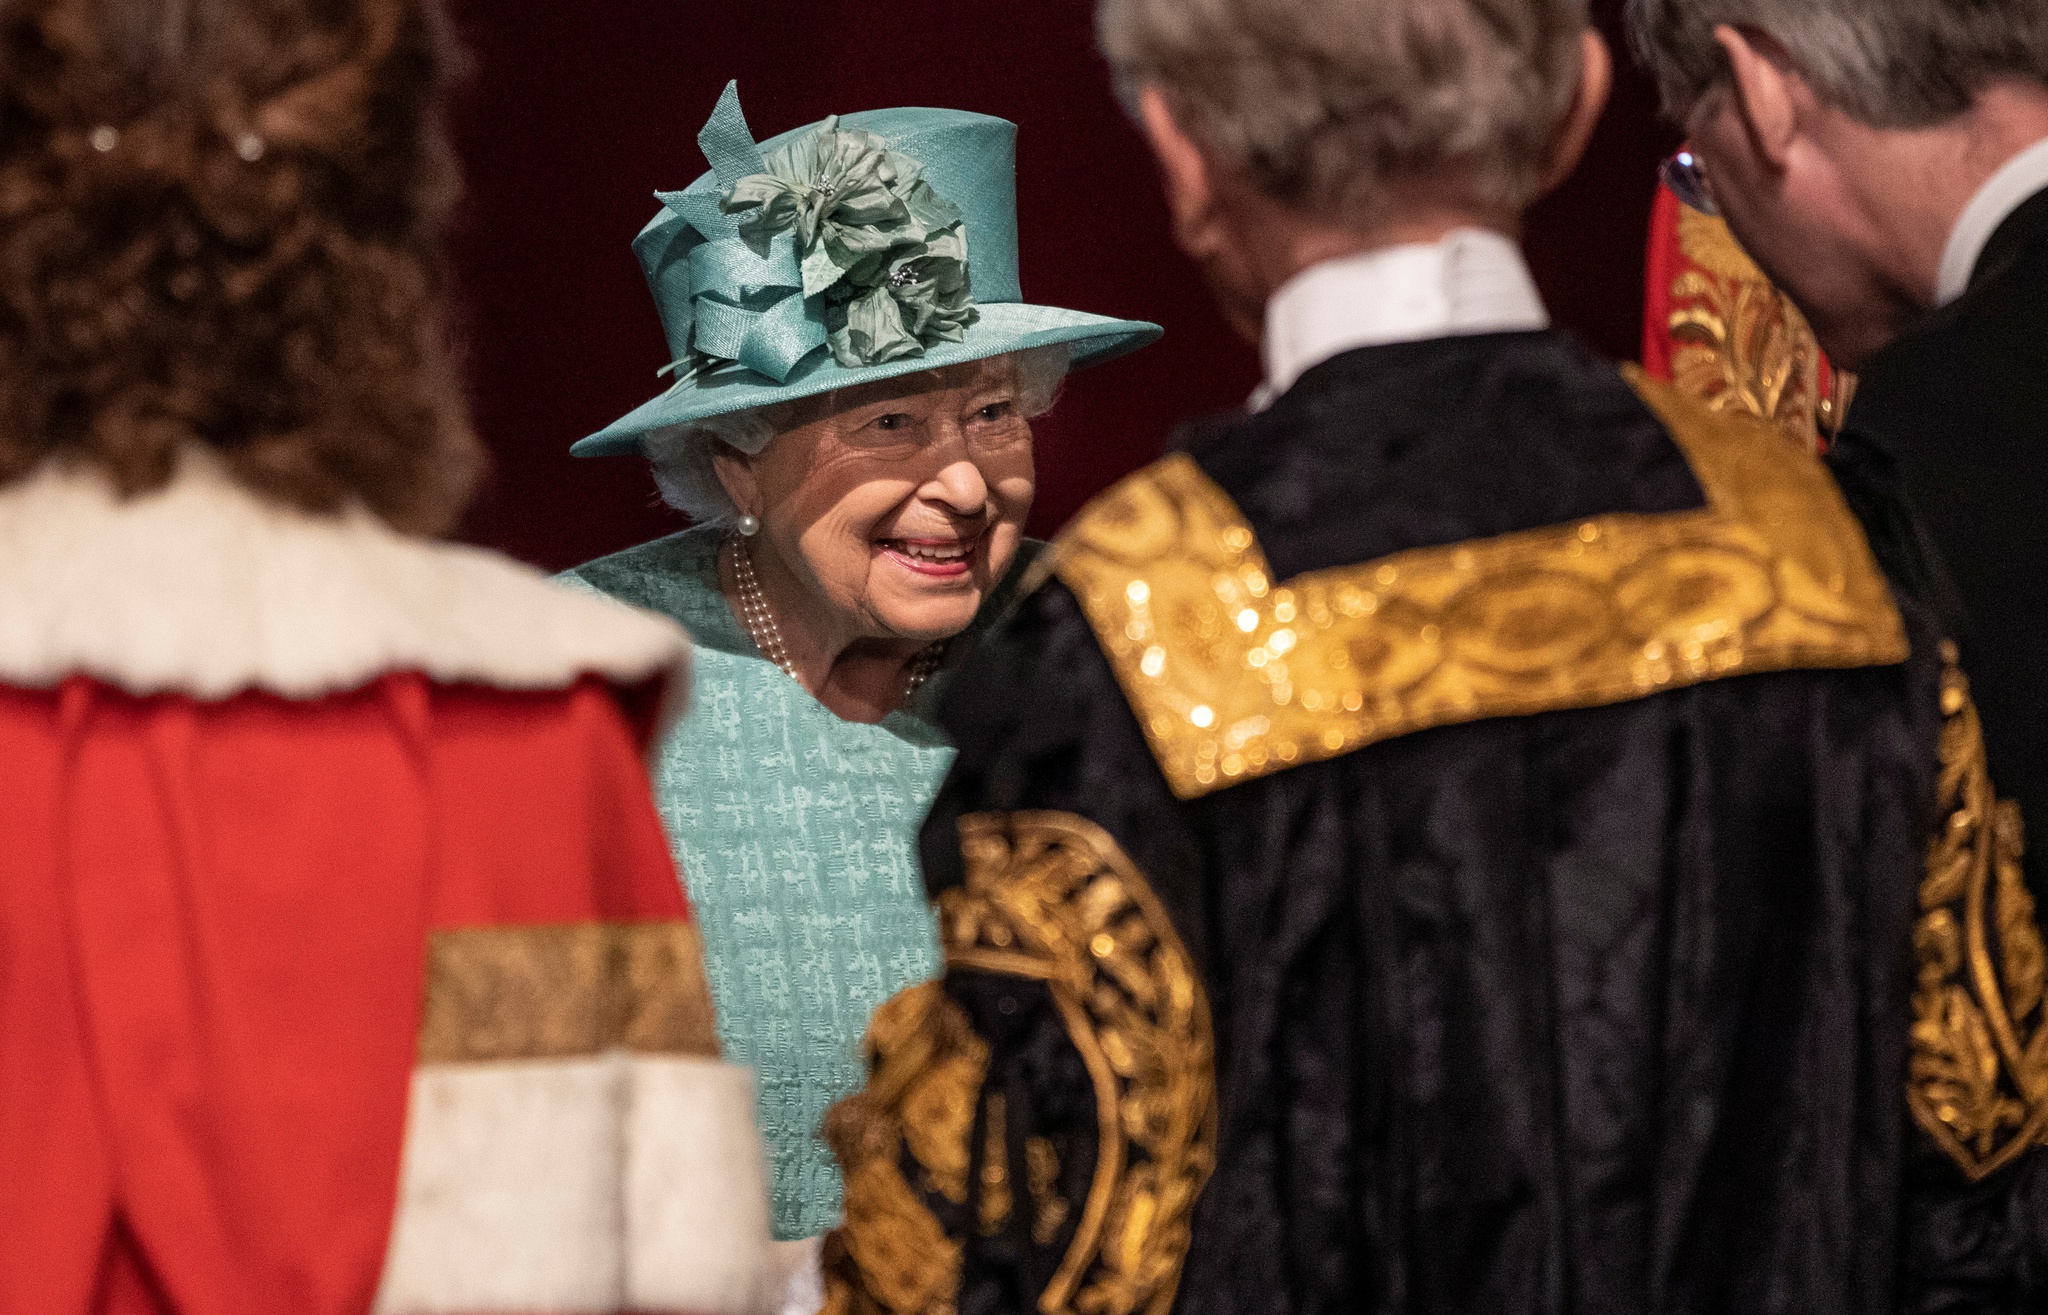 Escócia-Ucrânia: rainha Isabel II vai ser homenageada antes do jogo - CNN  Portugal